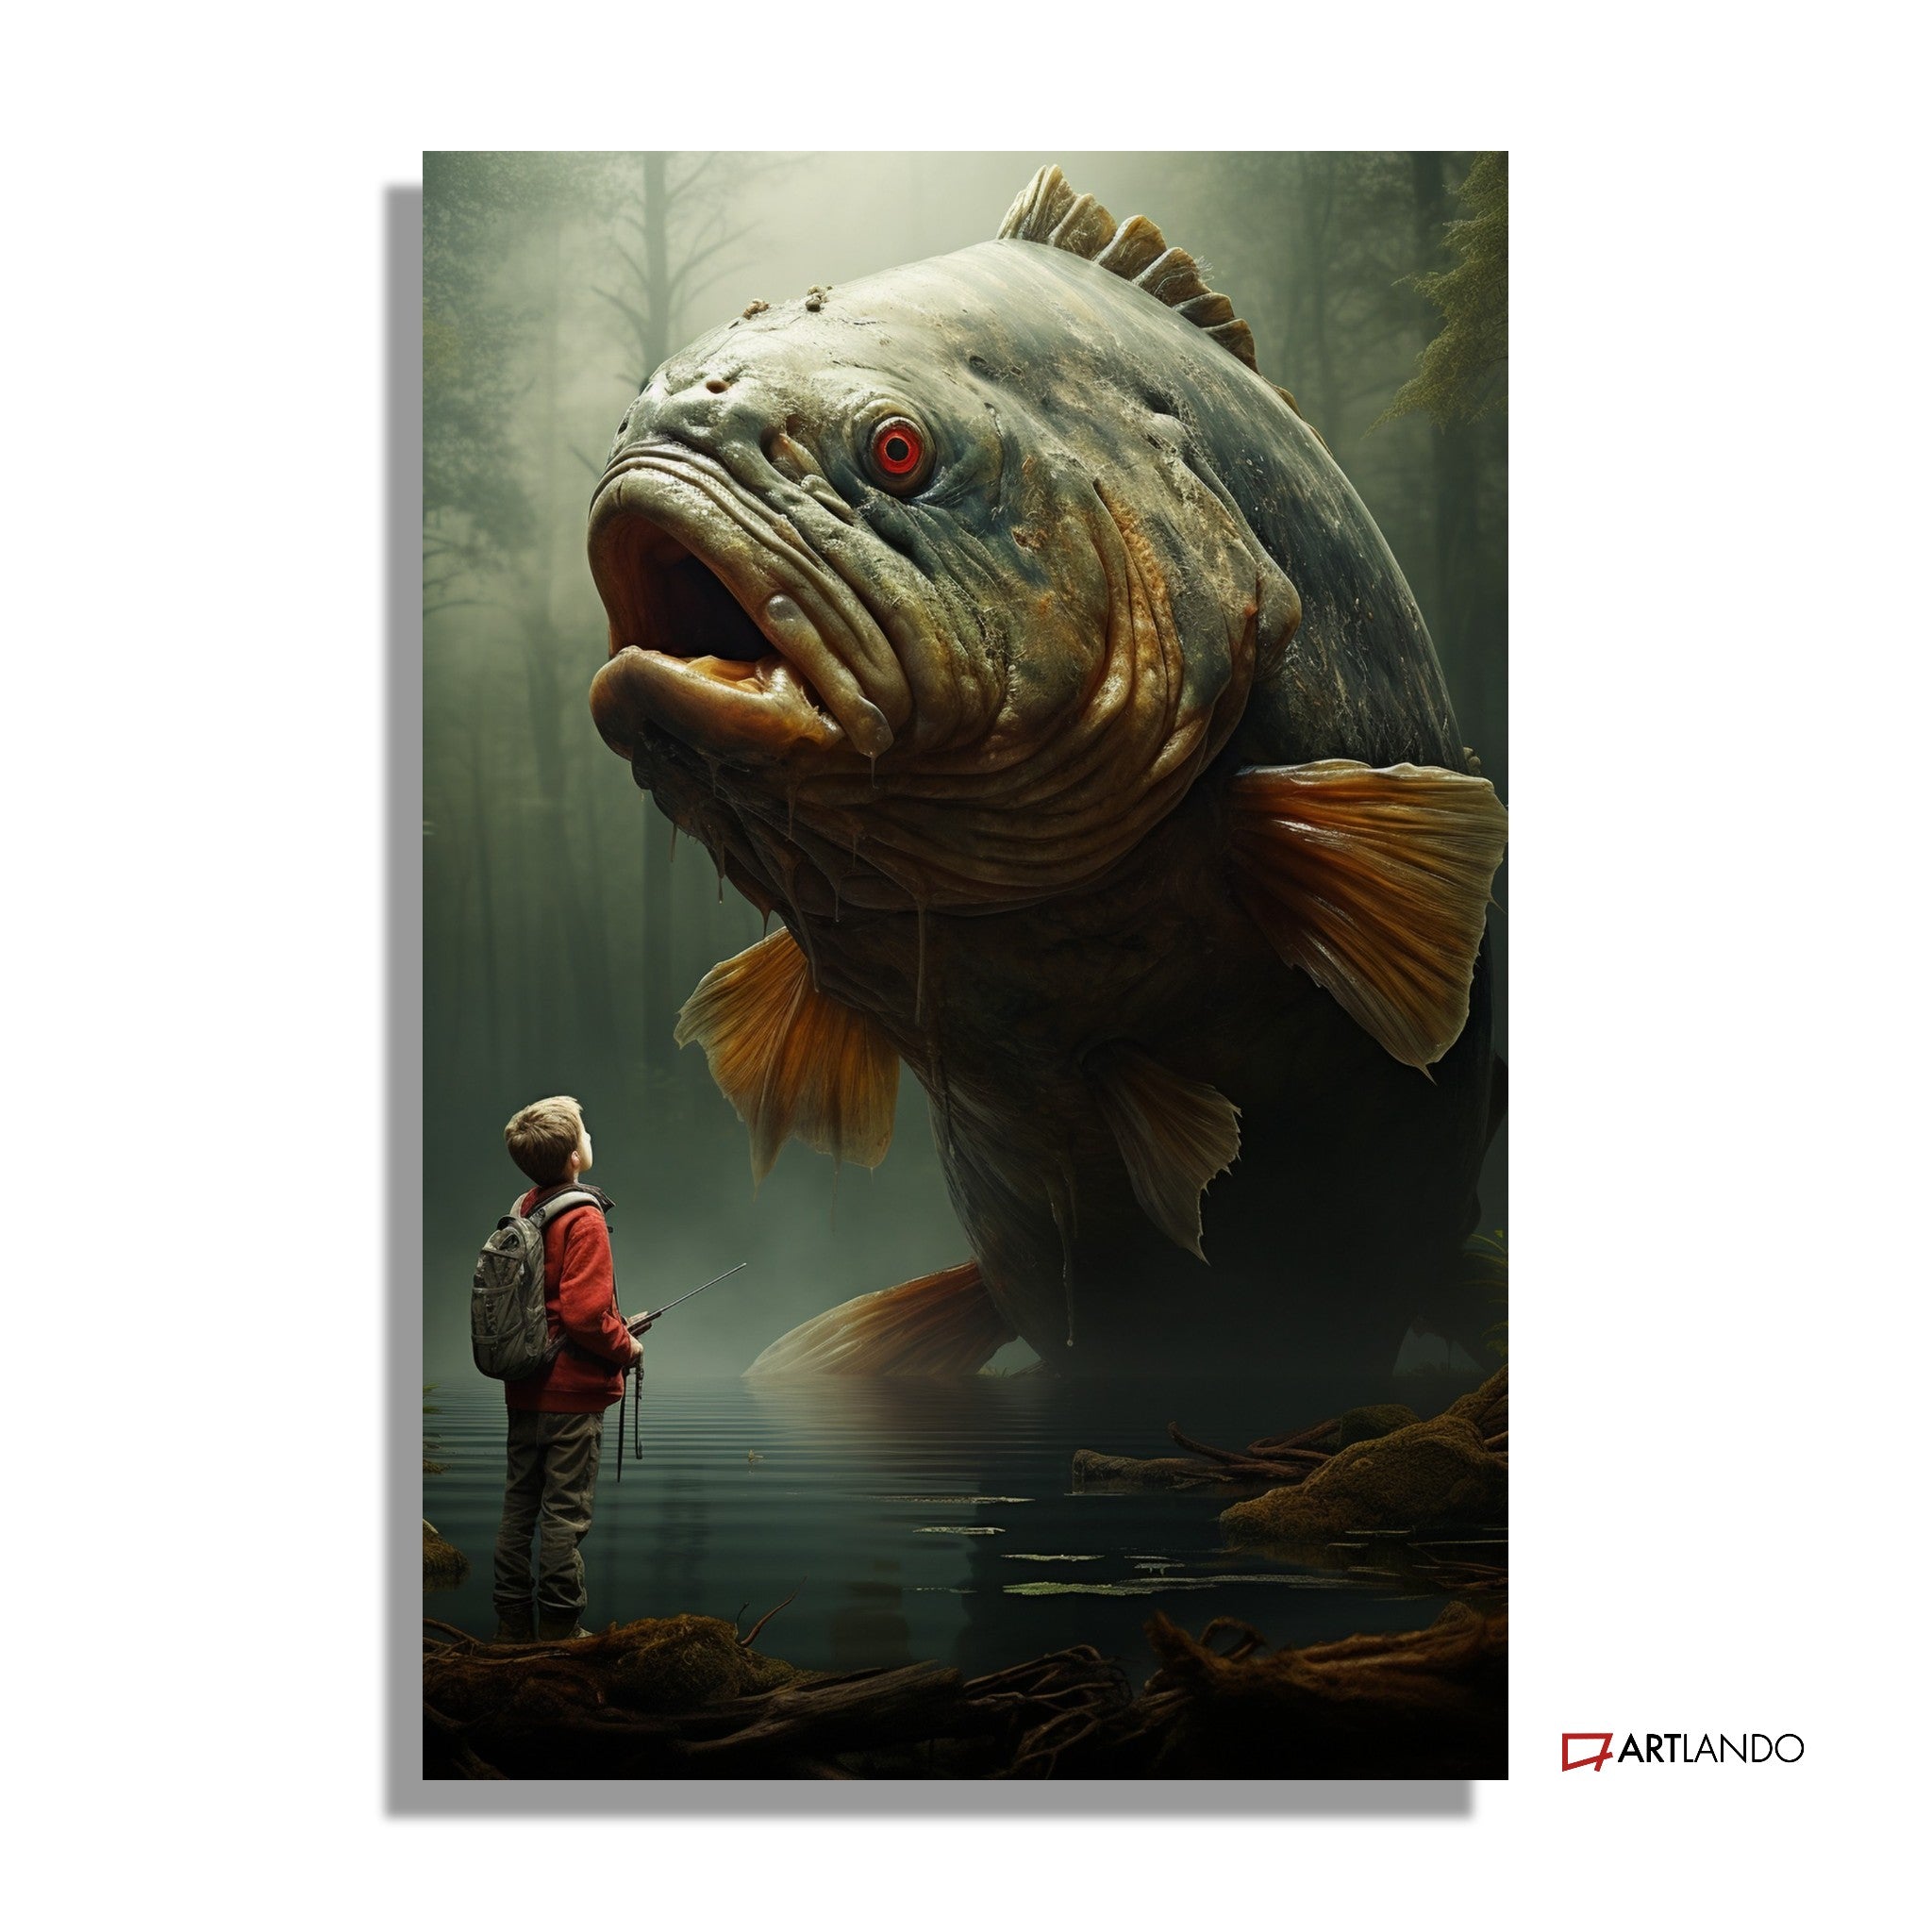 Junge in düsterem See trifft auf Riesenfisch